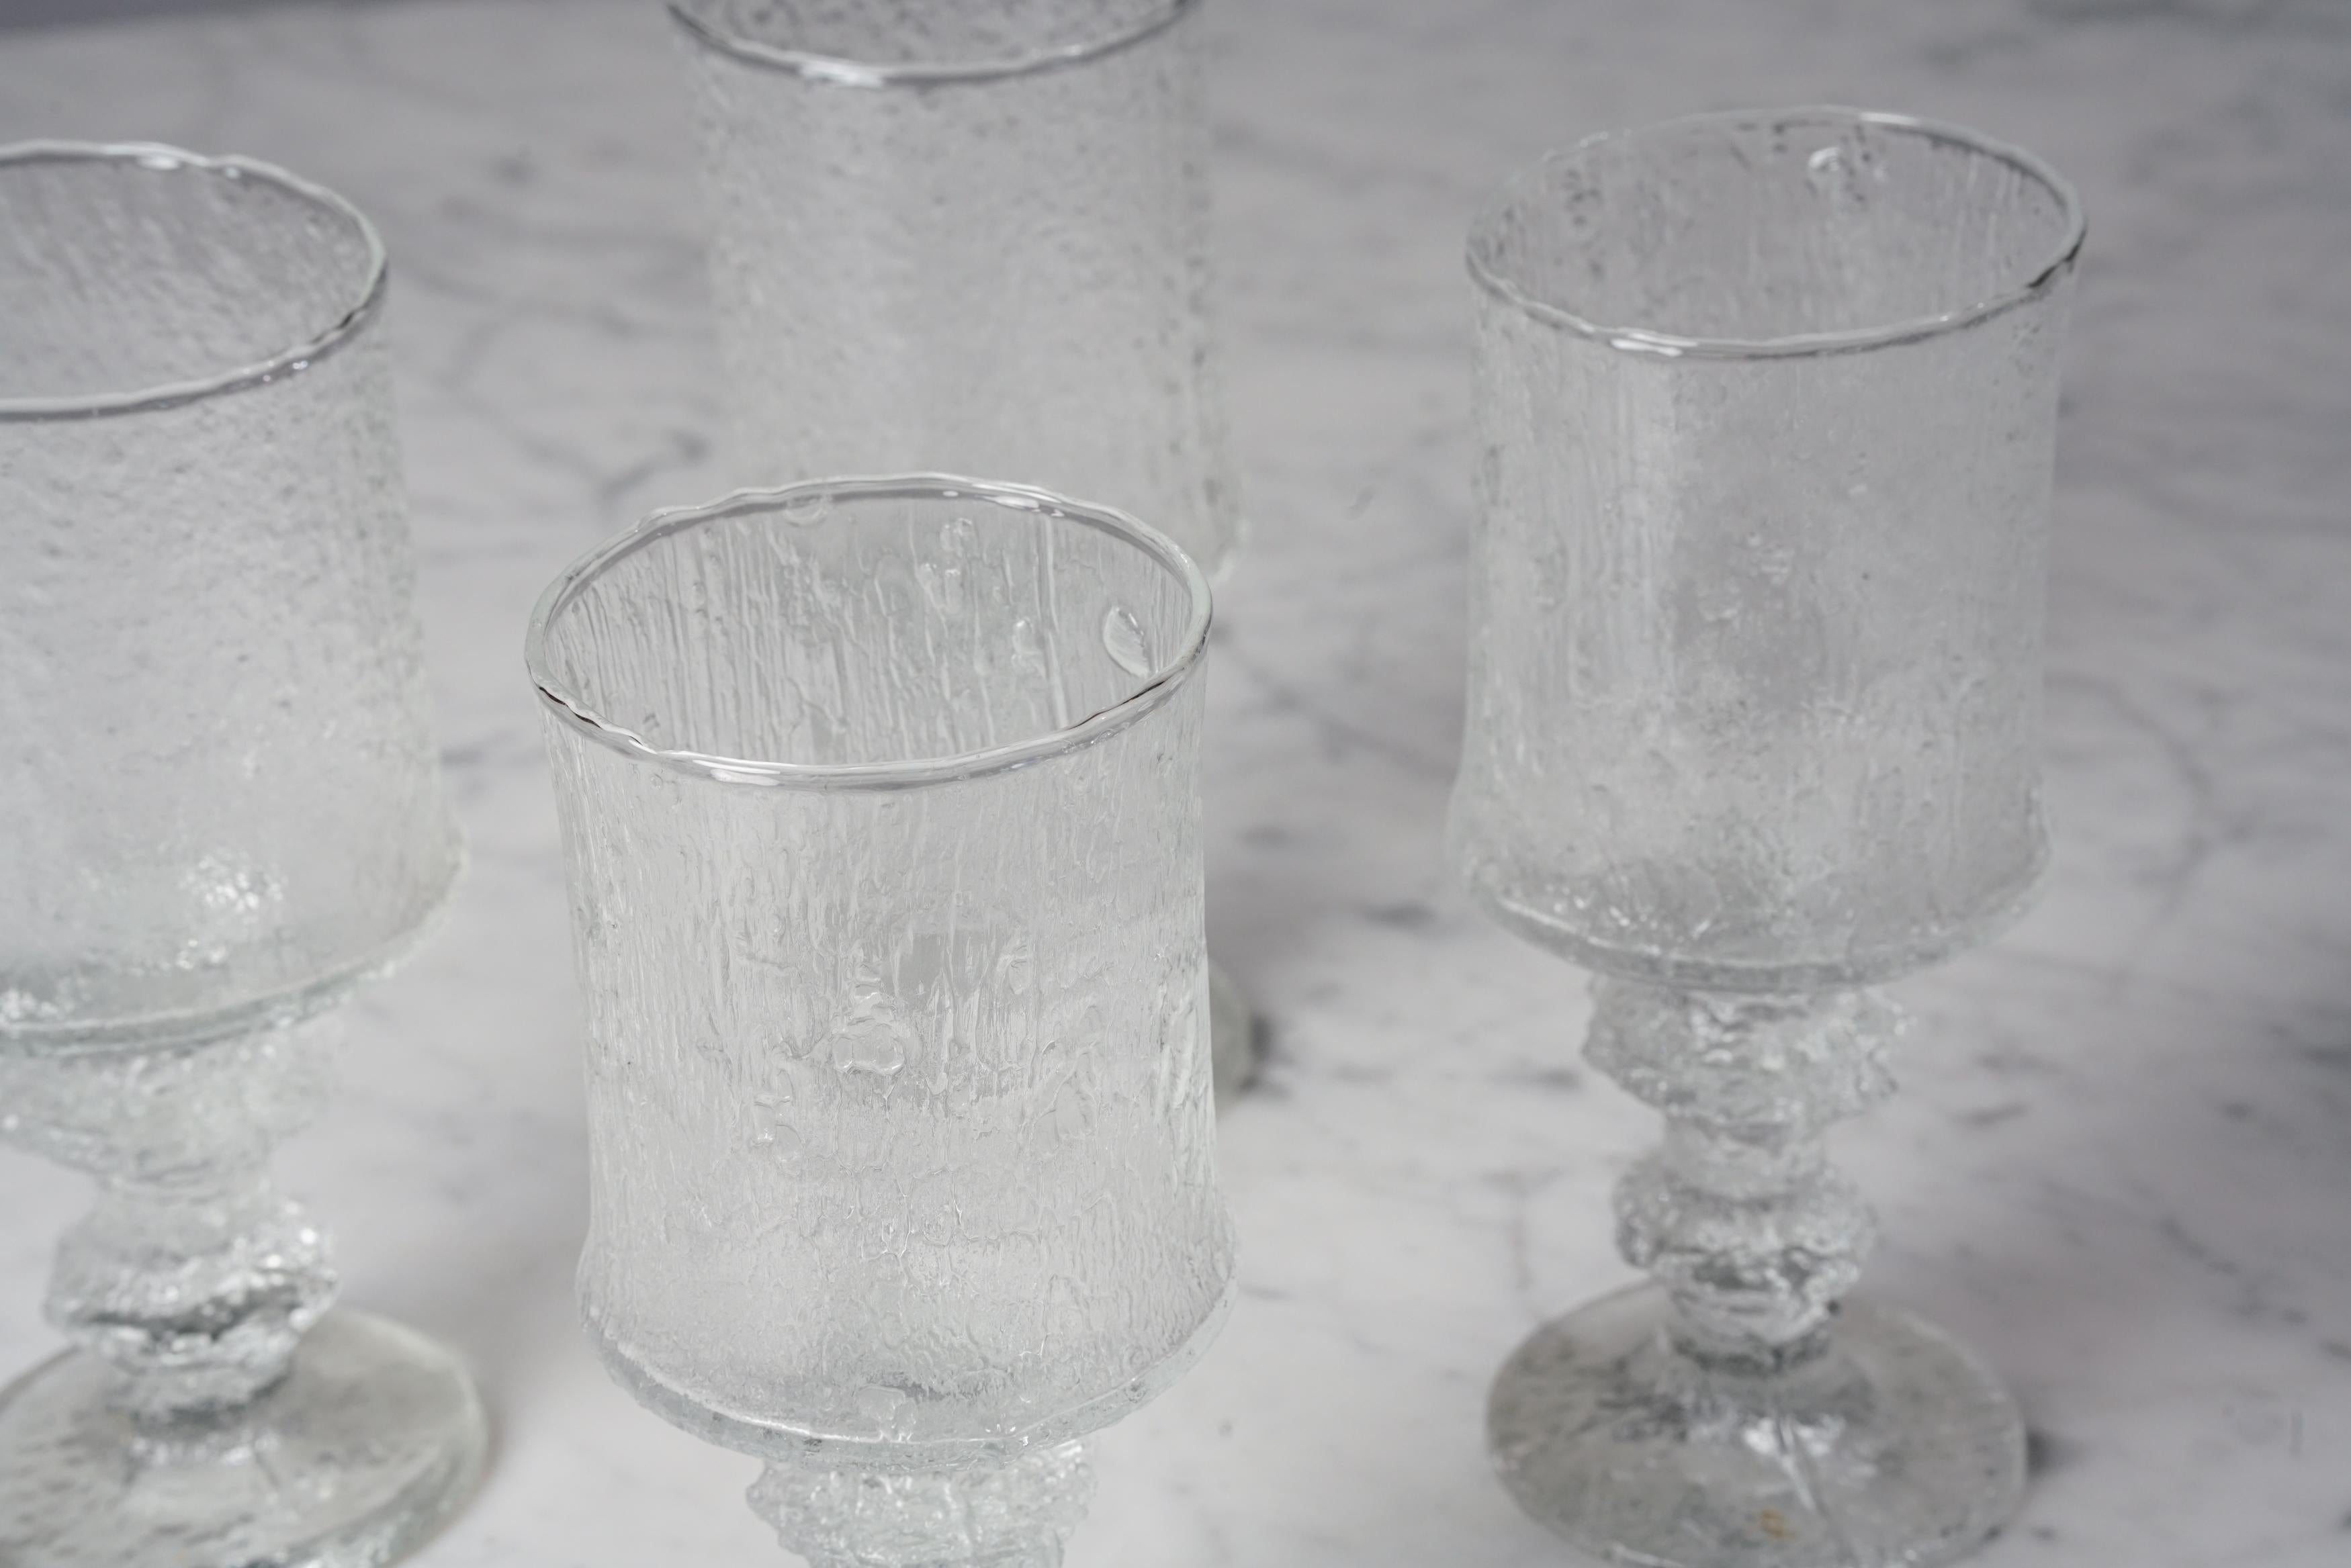 Modèle de verre Modern Scandinavian 2140 (6 pièces) par Timo Sarpaneva pour Iittala, 1970, verre, bon état vintage, légères usures dues à l'âge et à l'utilisation. Le piédestal en verre est de taille importante et baroque, avec une surface riche et